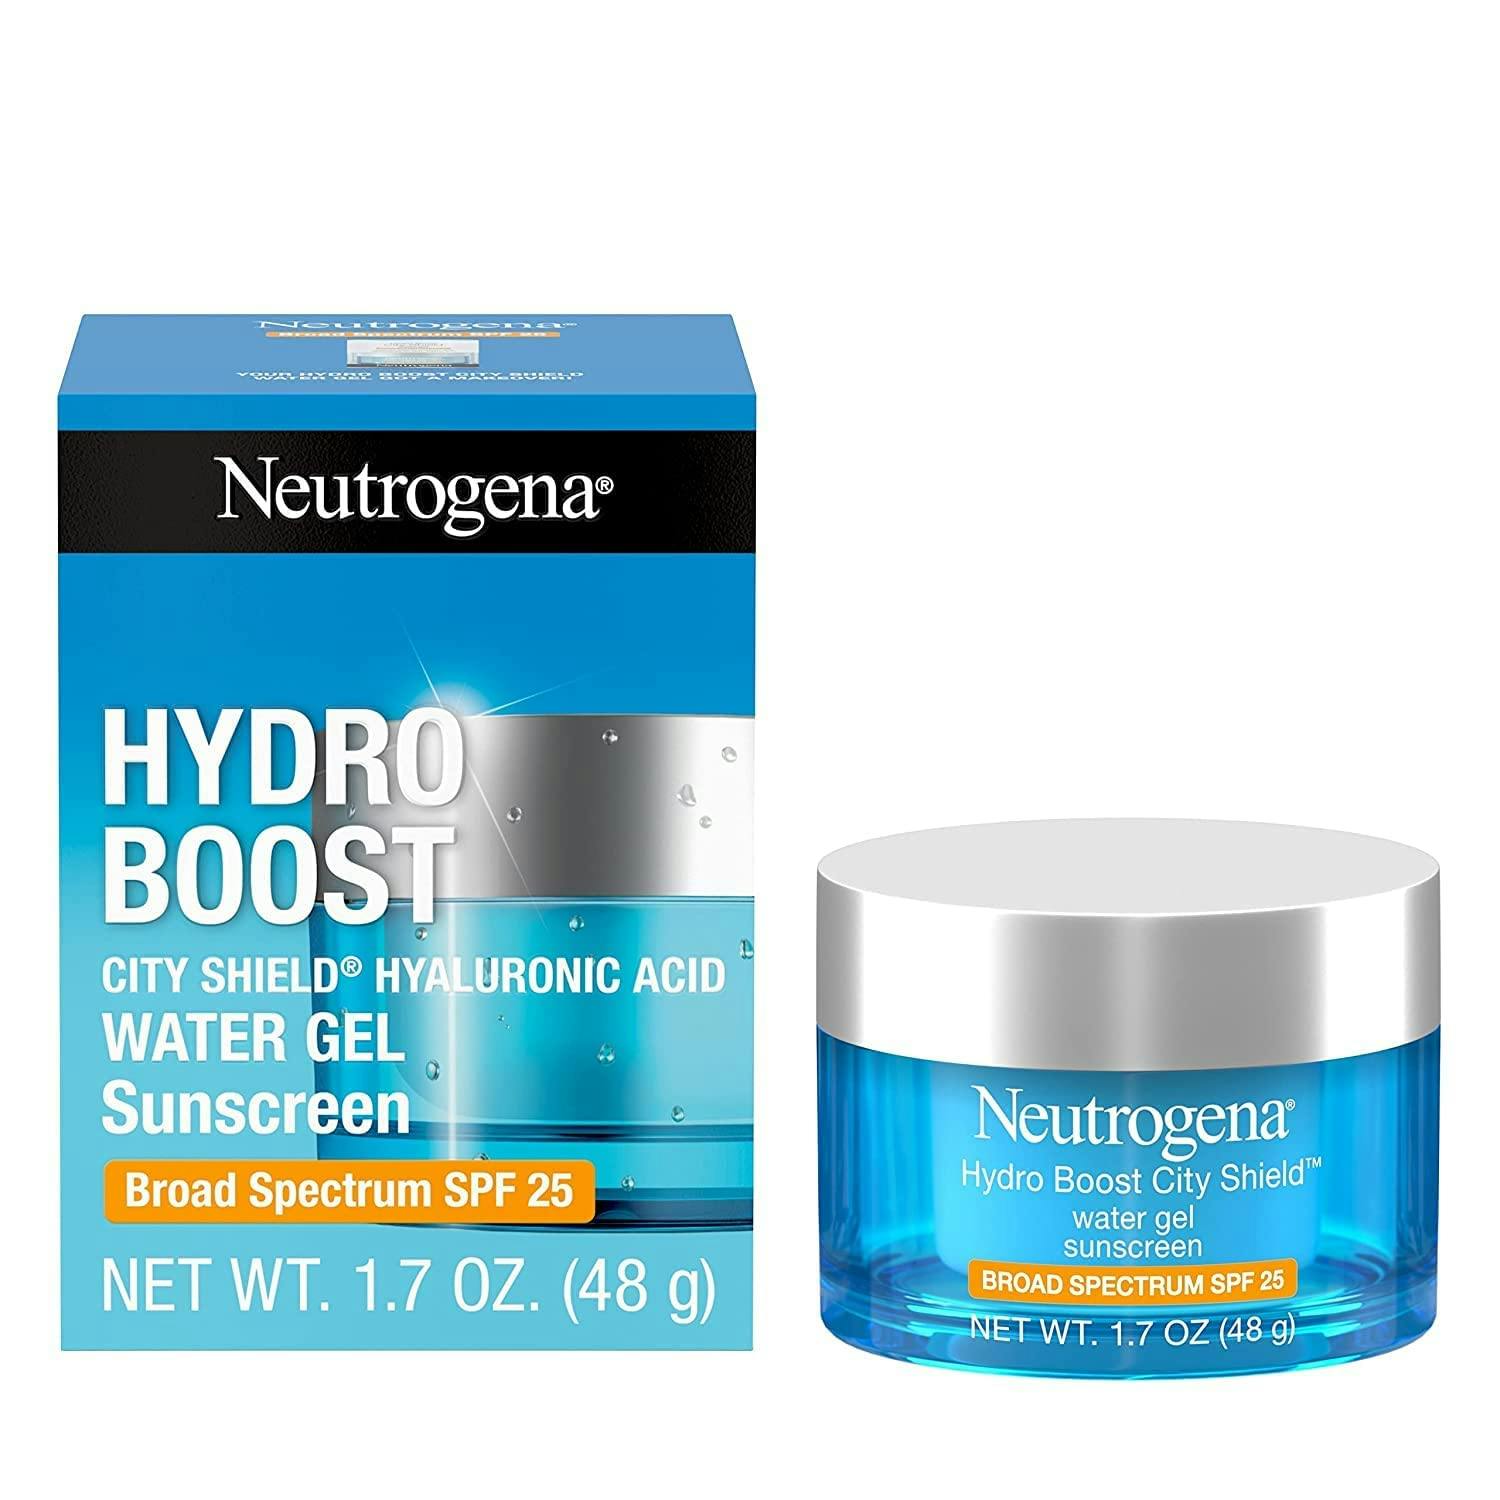 Neutrogena | Hydro Boost City Shield Water Gel Sunscreen 